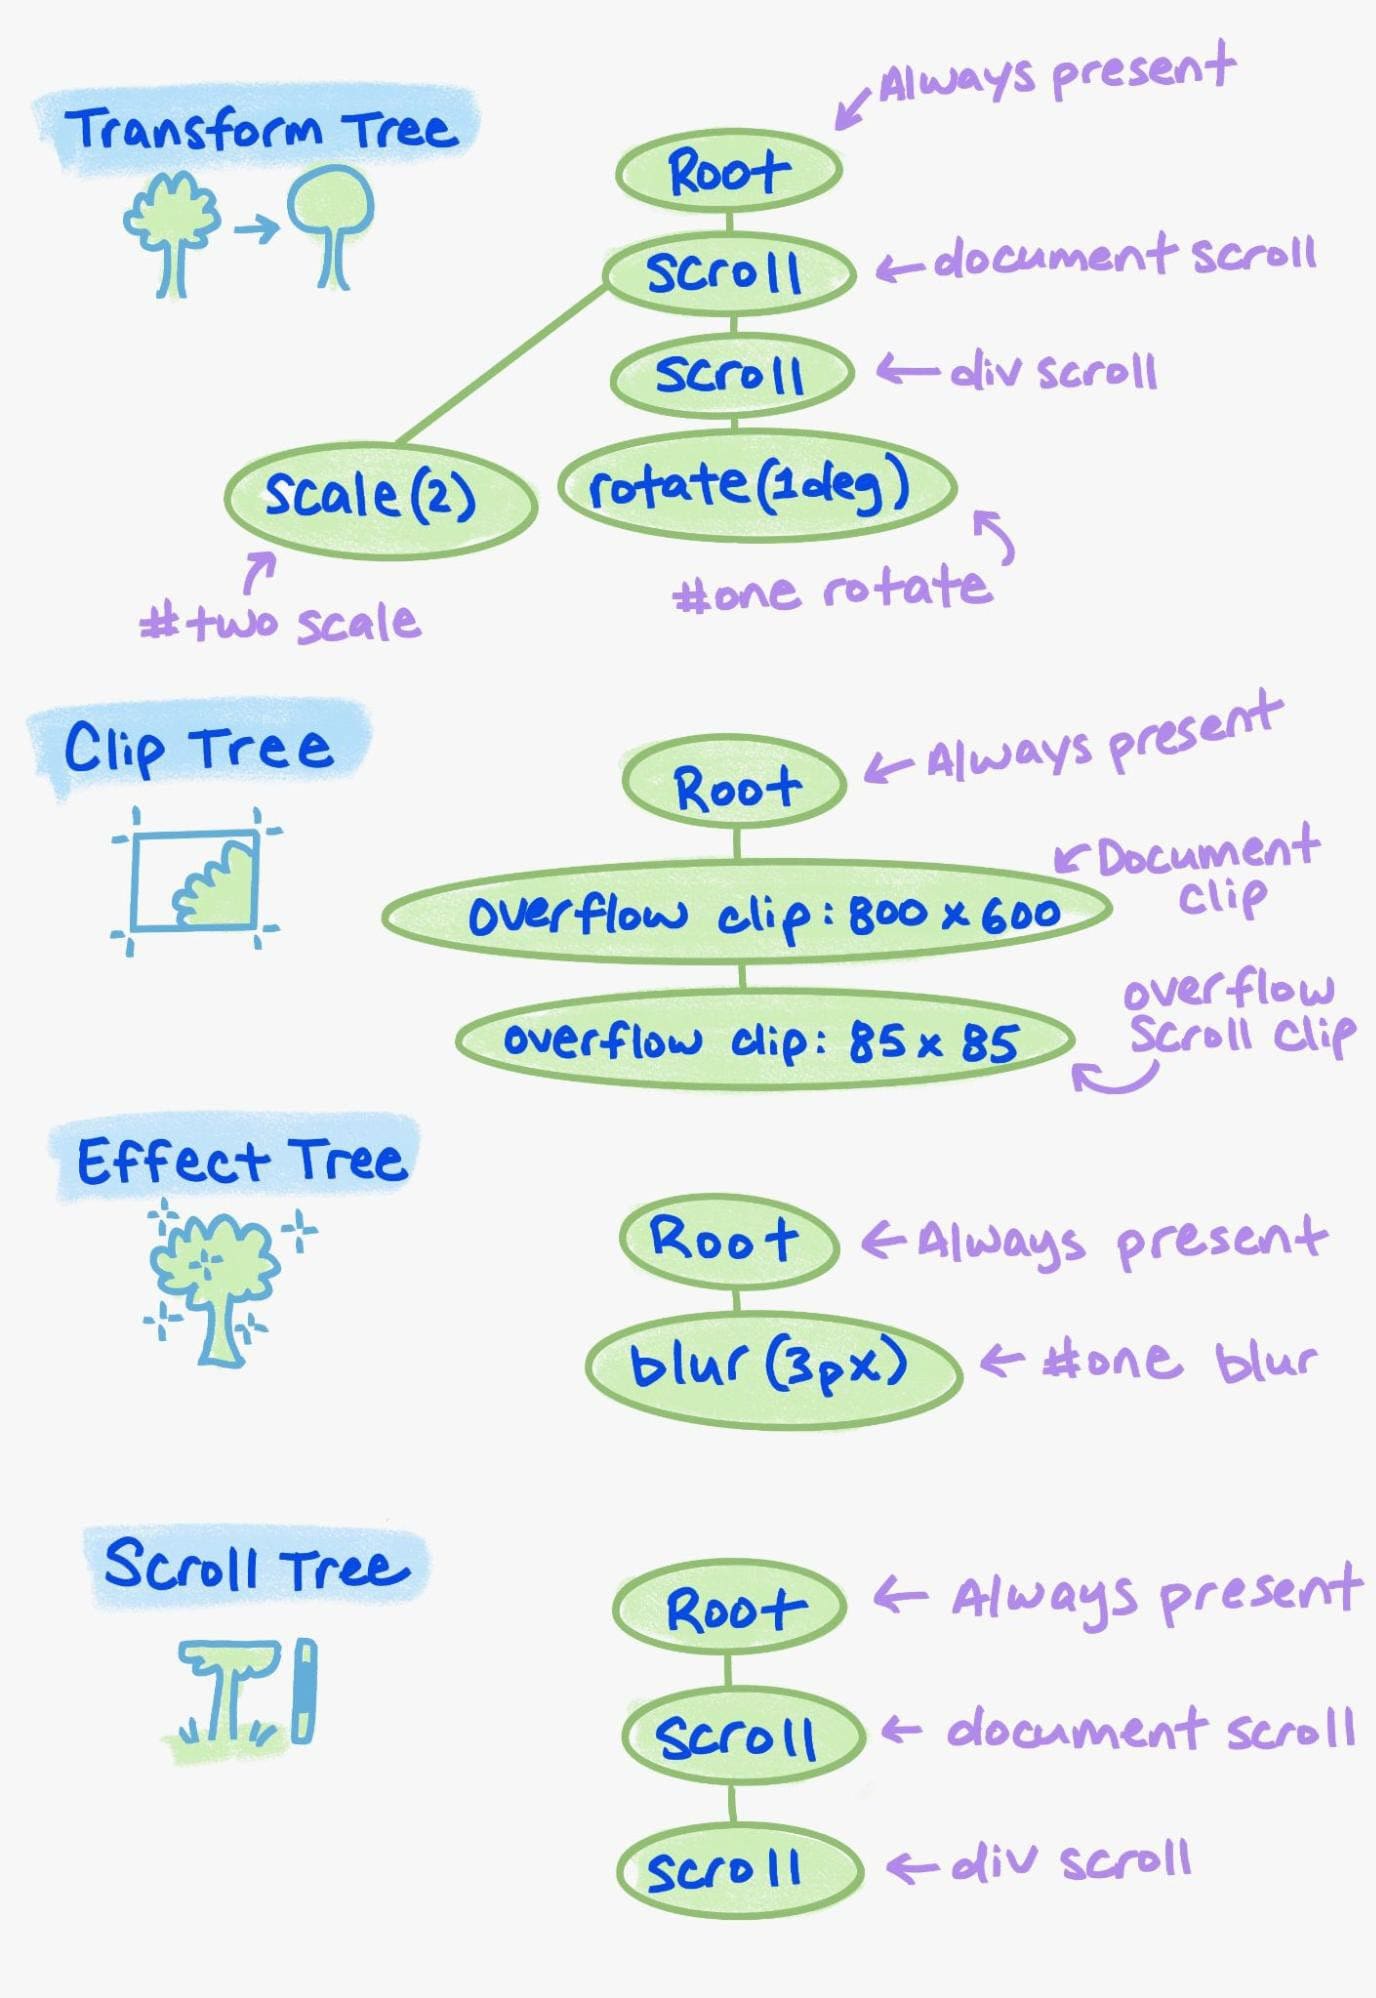 属性树中各种元素的示例。